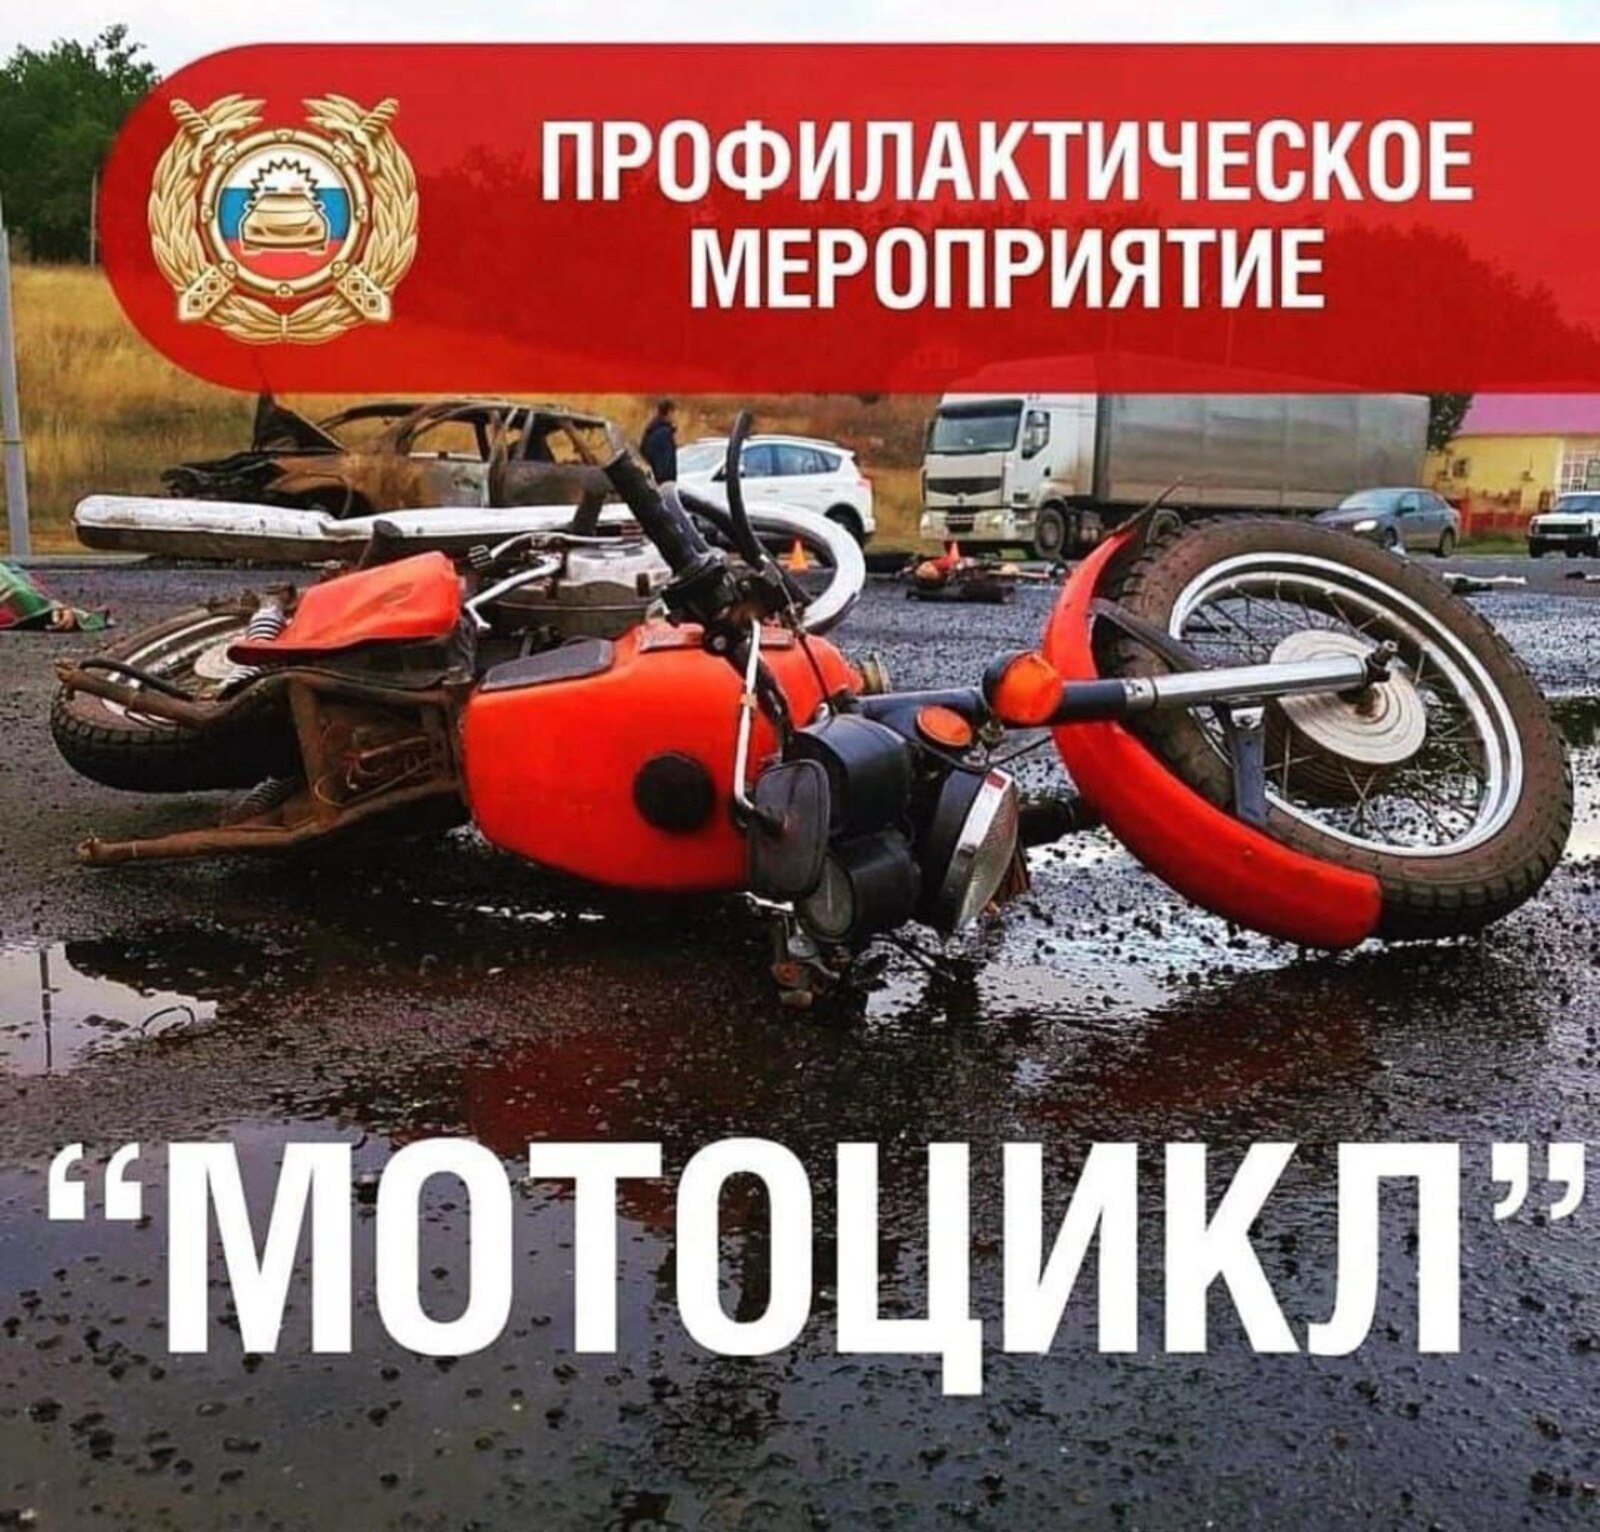 На территории Башкортостана началась операция "Мотоцикл"